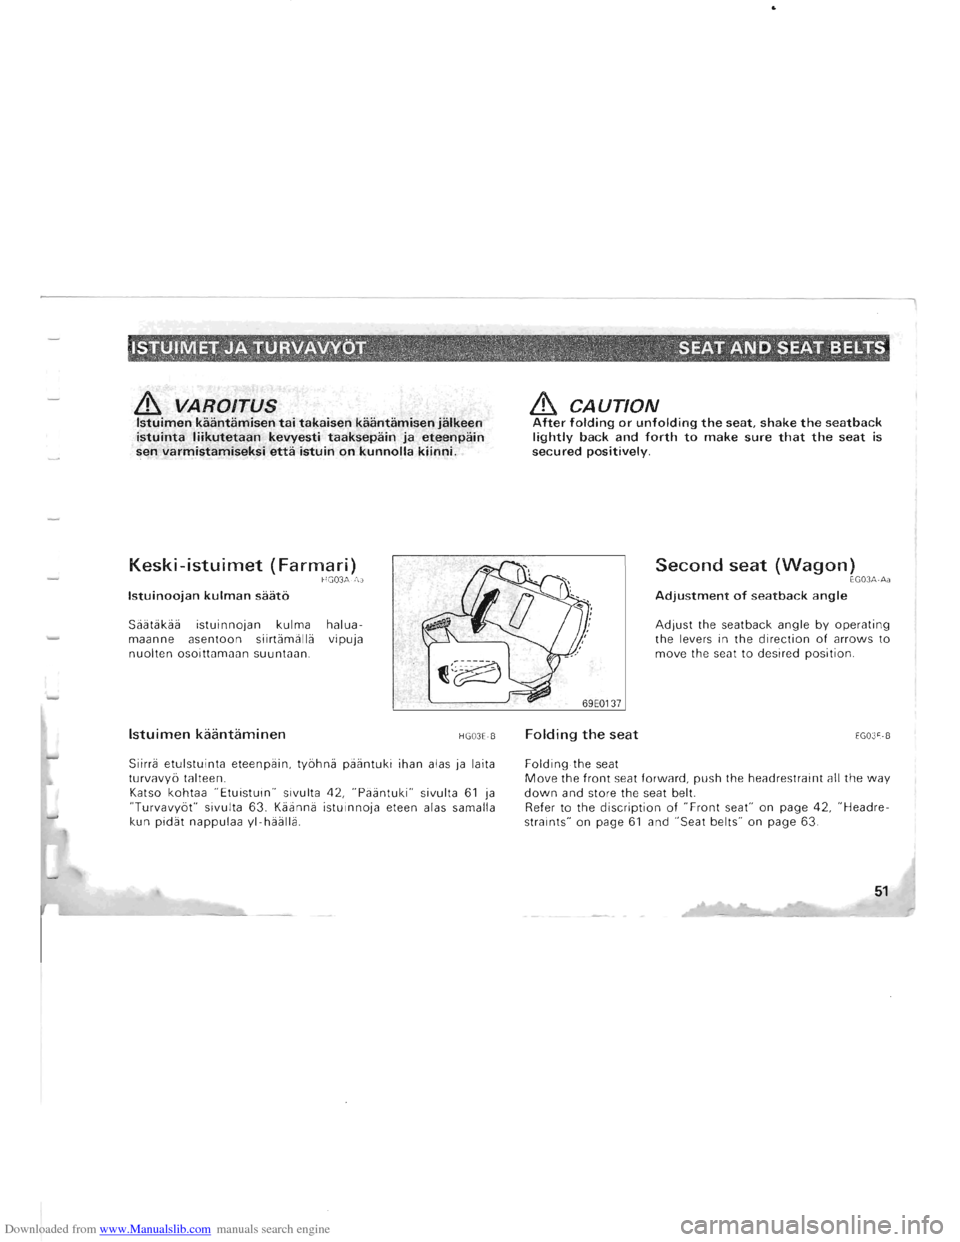 MITSUBISHI PAJERO 1996 2.G Owners Manual Downloaded from www.Manualslib.com manuals search engine & VAROITUS Istuimen kaantamisen tai takaisen kaantamisen jalkeen istuinta liikutetaan kevyesti taaksepain ja eteenpain sen varmistamiseksi etta